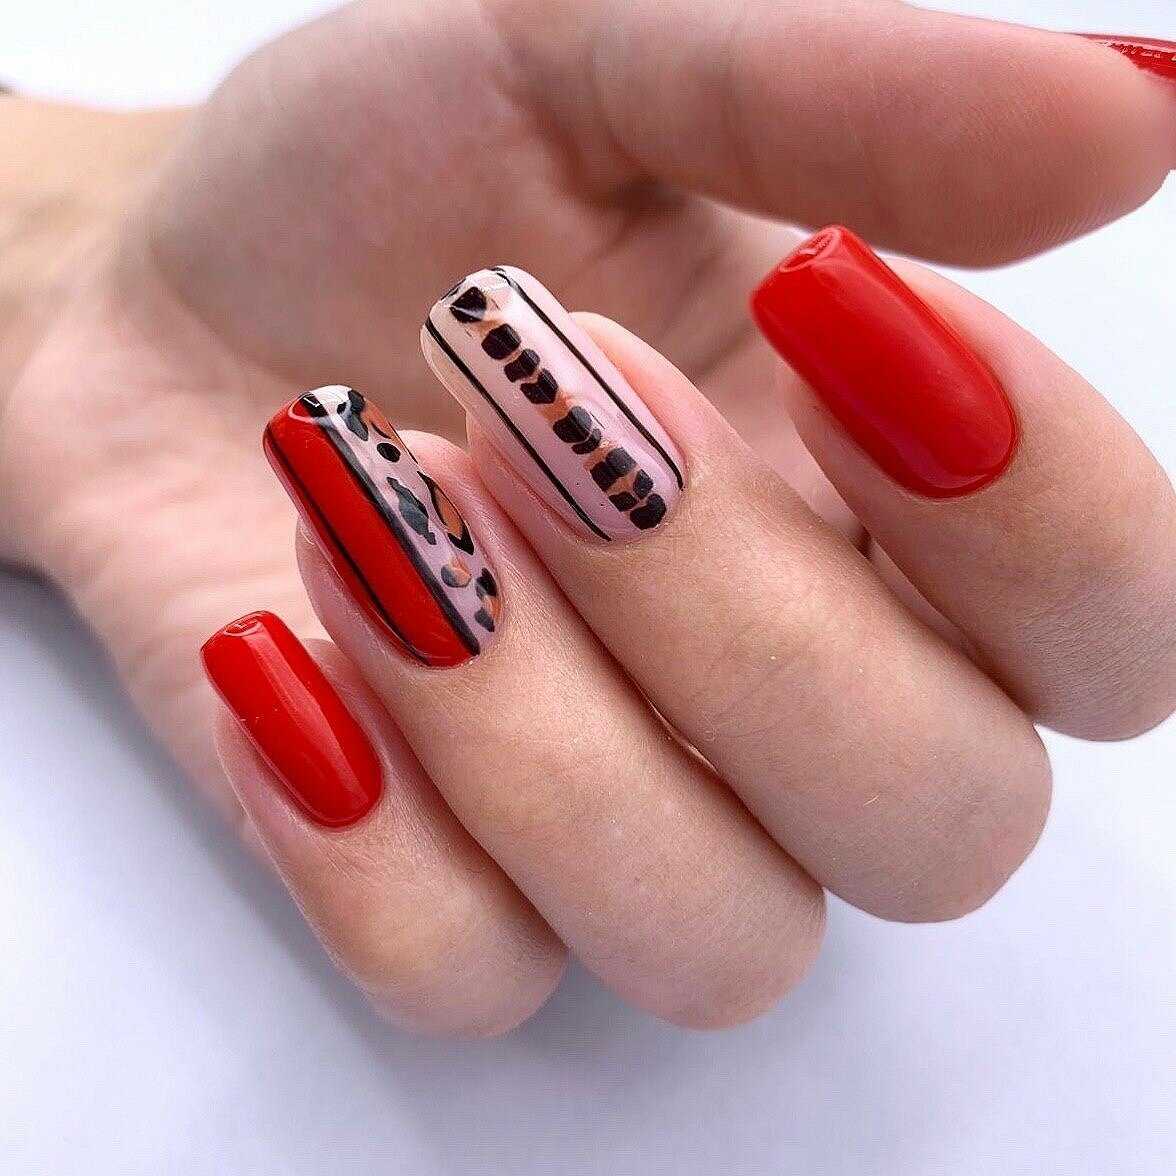 Красный дизайн ногтей и яркий маникюр: 160+ фото